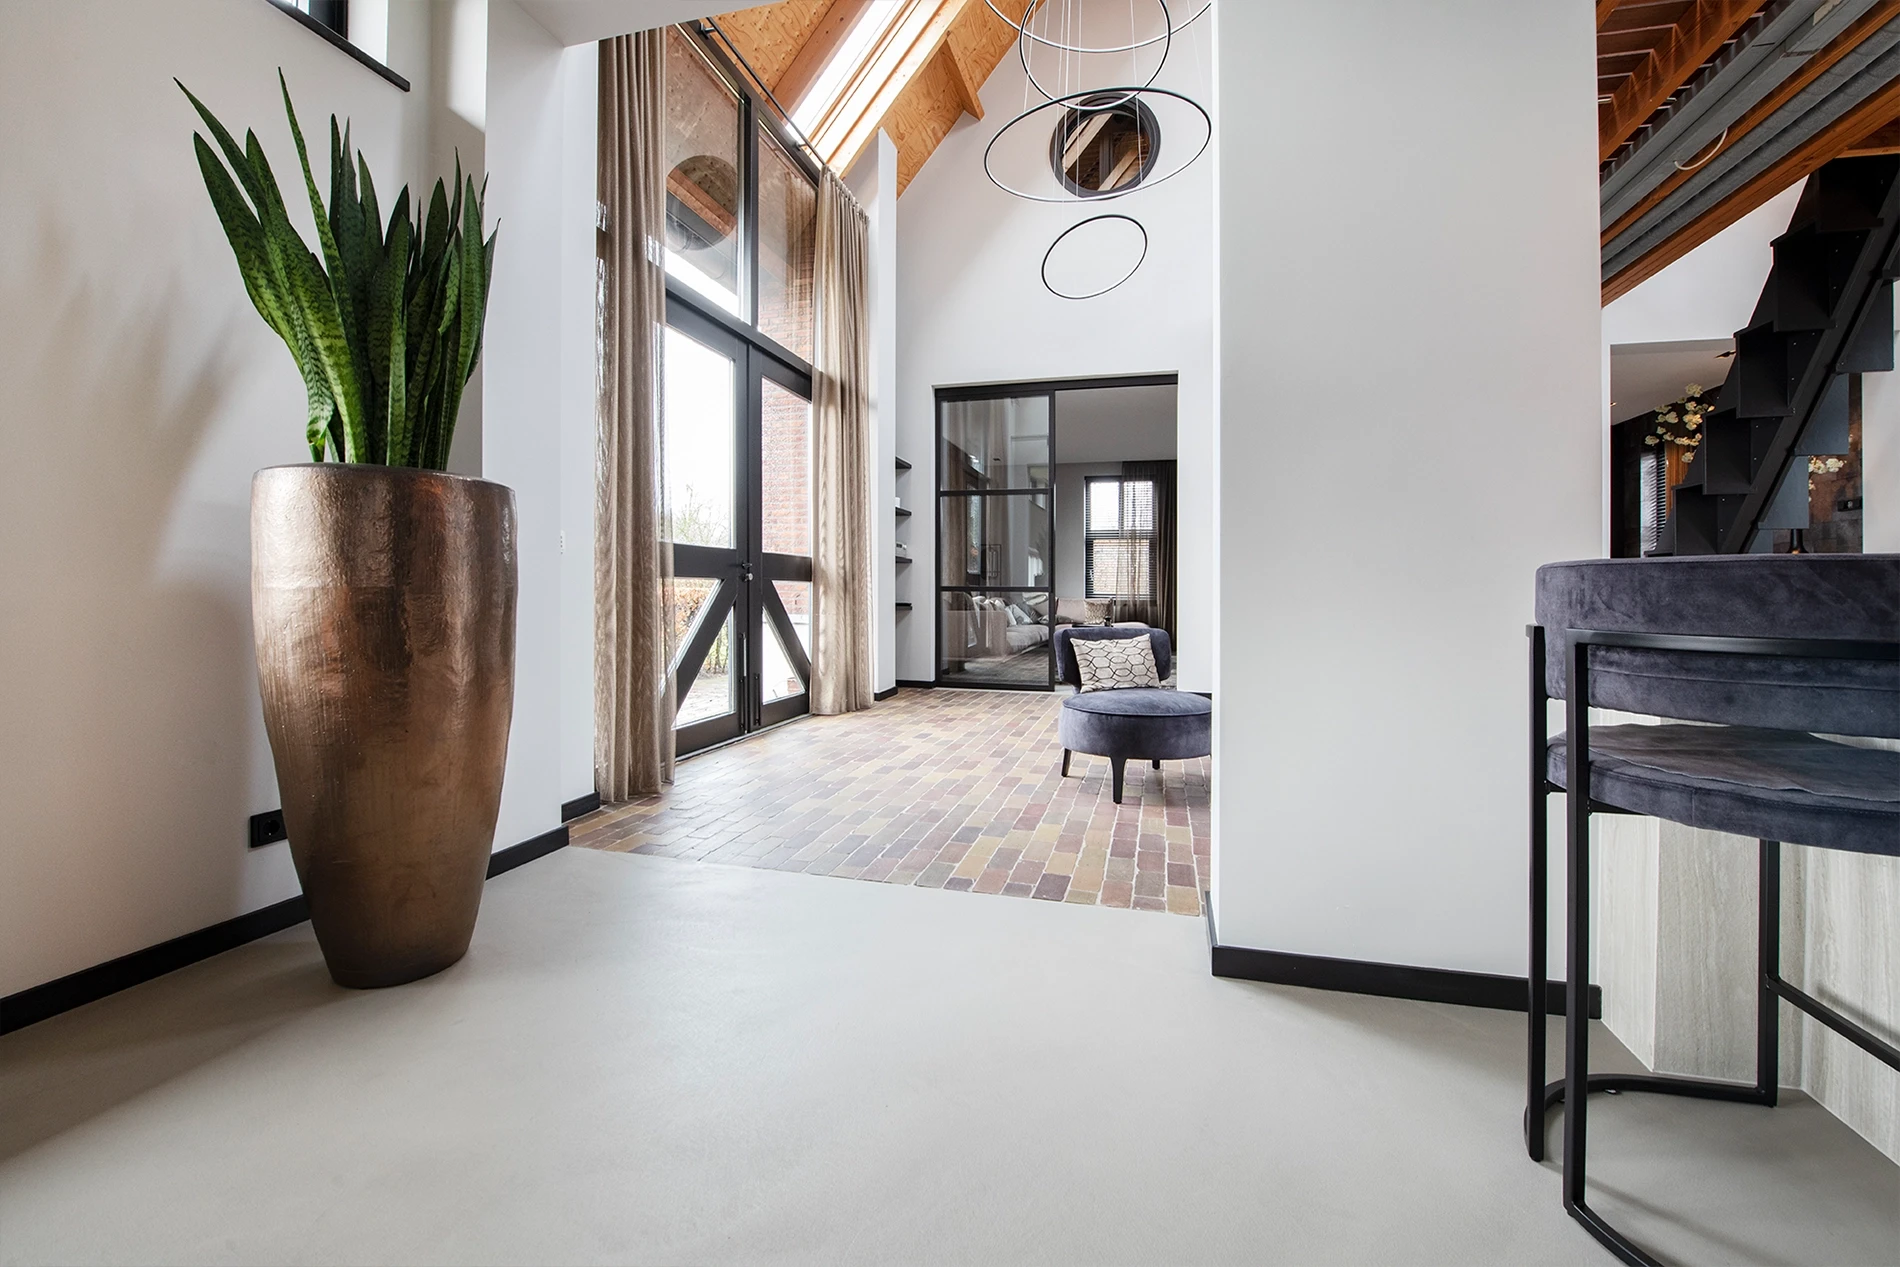 Premium Leef-Beton vloer (kleur: Fossil) in gerenoveerde woonboerderij in Sint-Oedenrode6